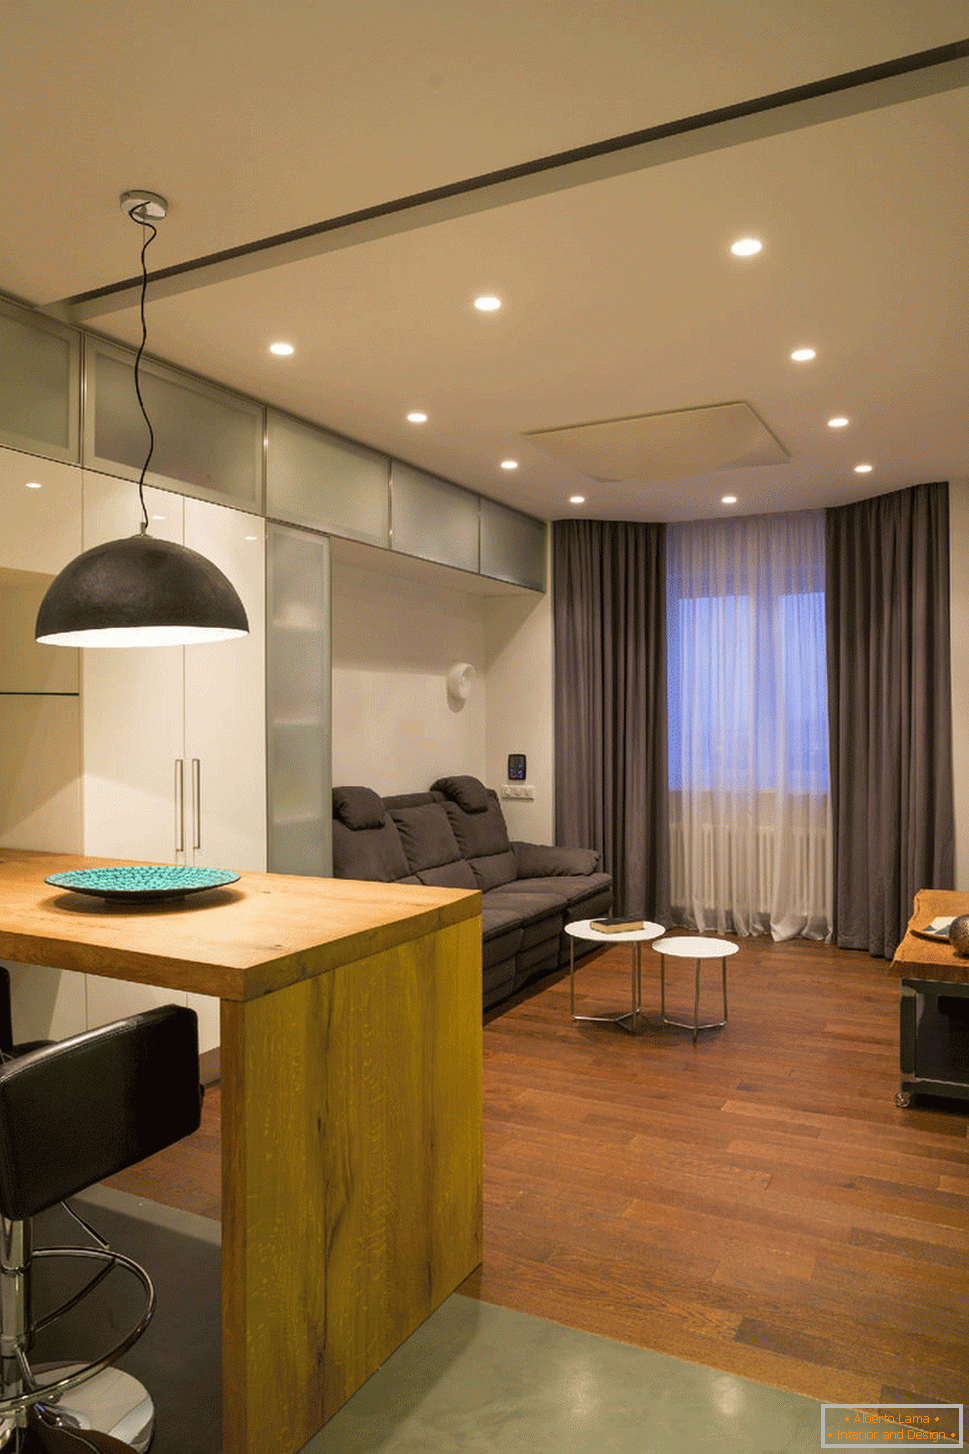 Iluminação num apartamento com iluminação controlada